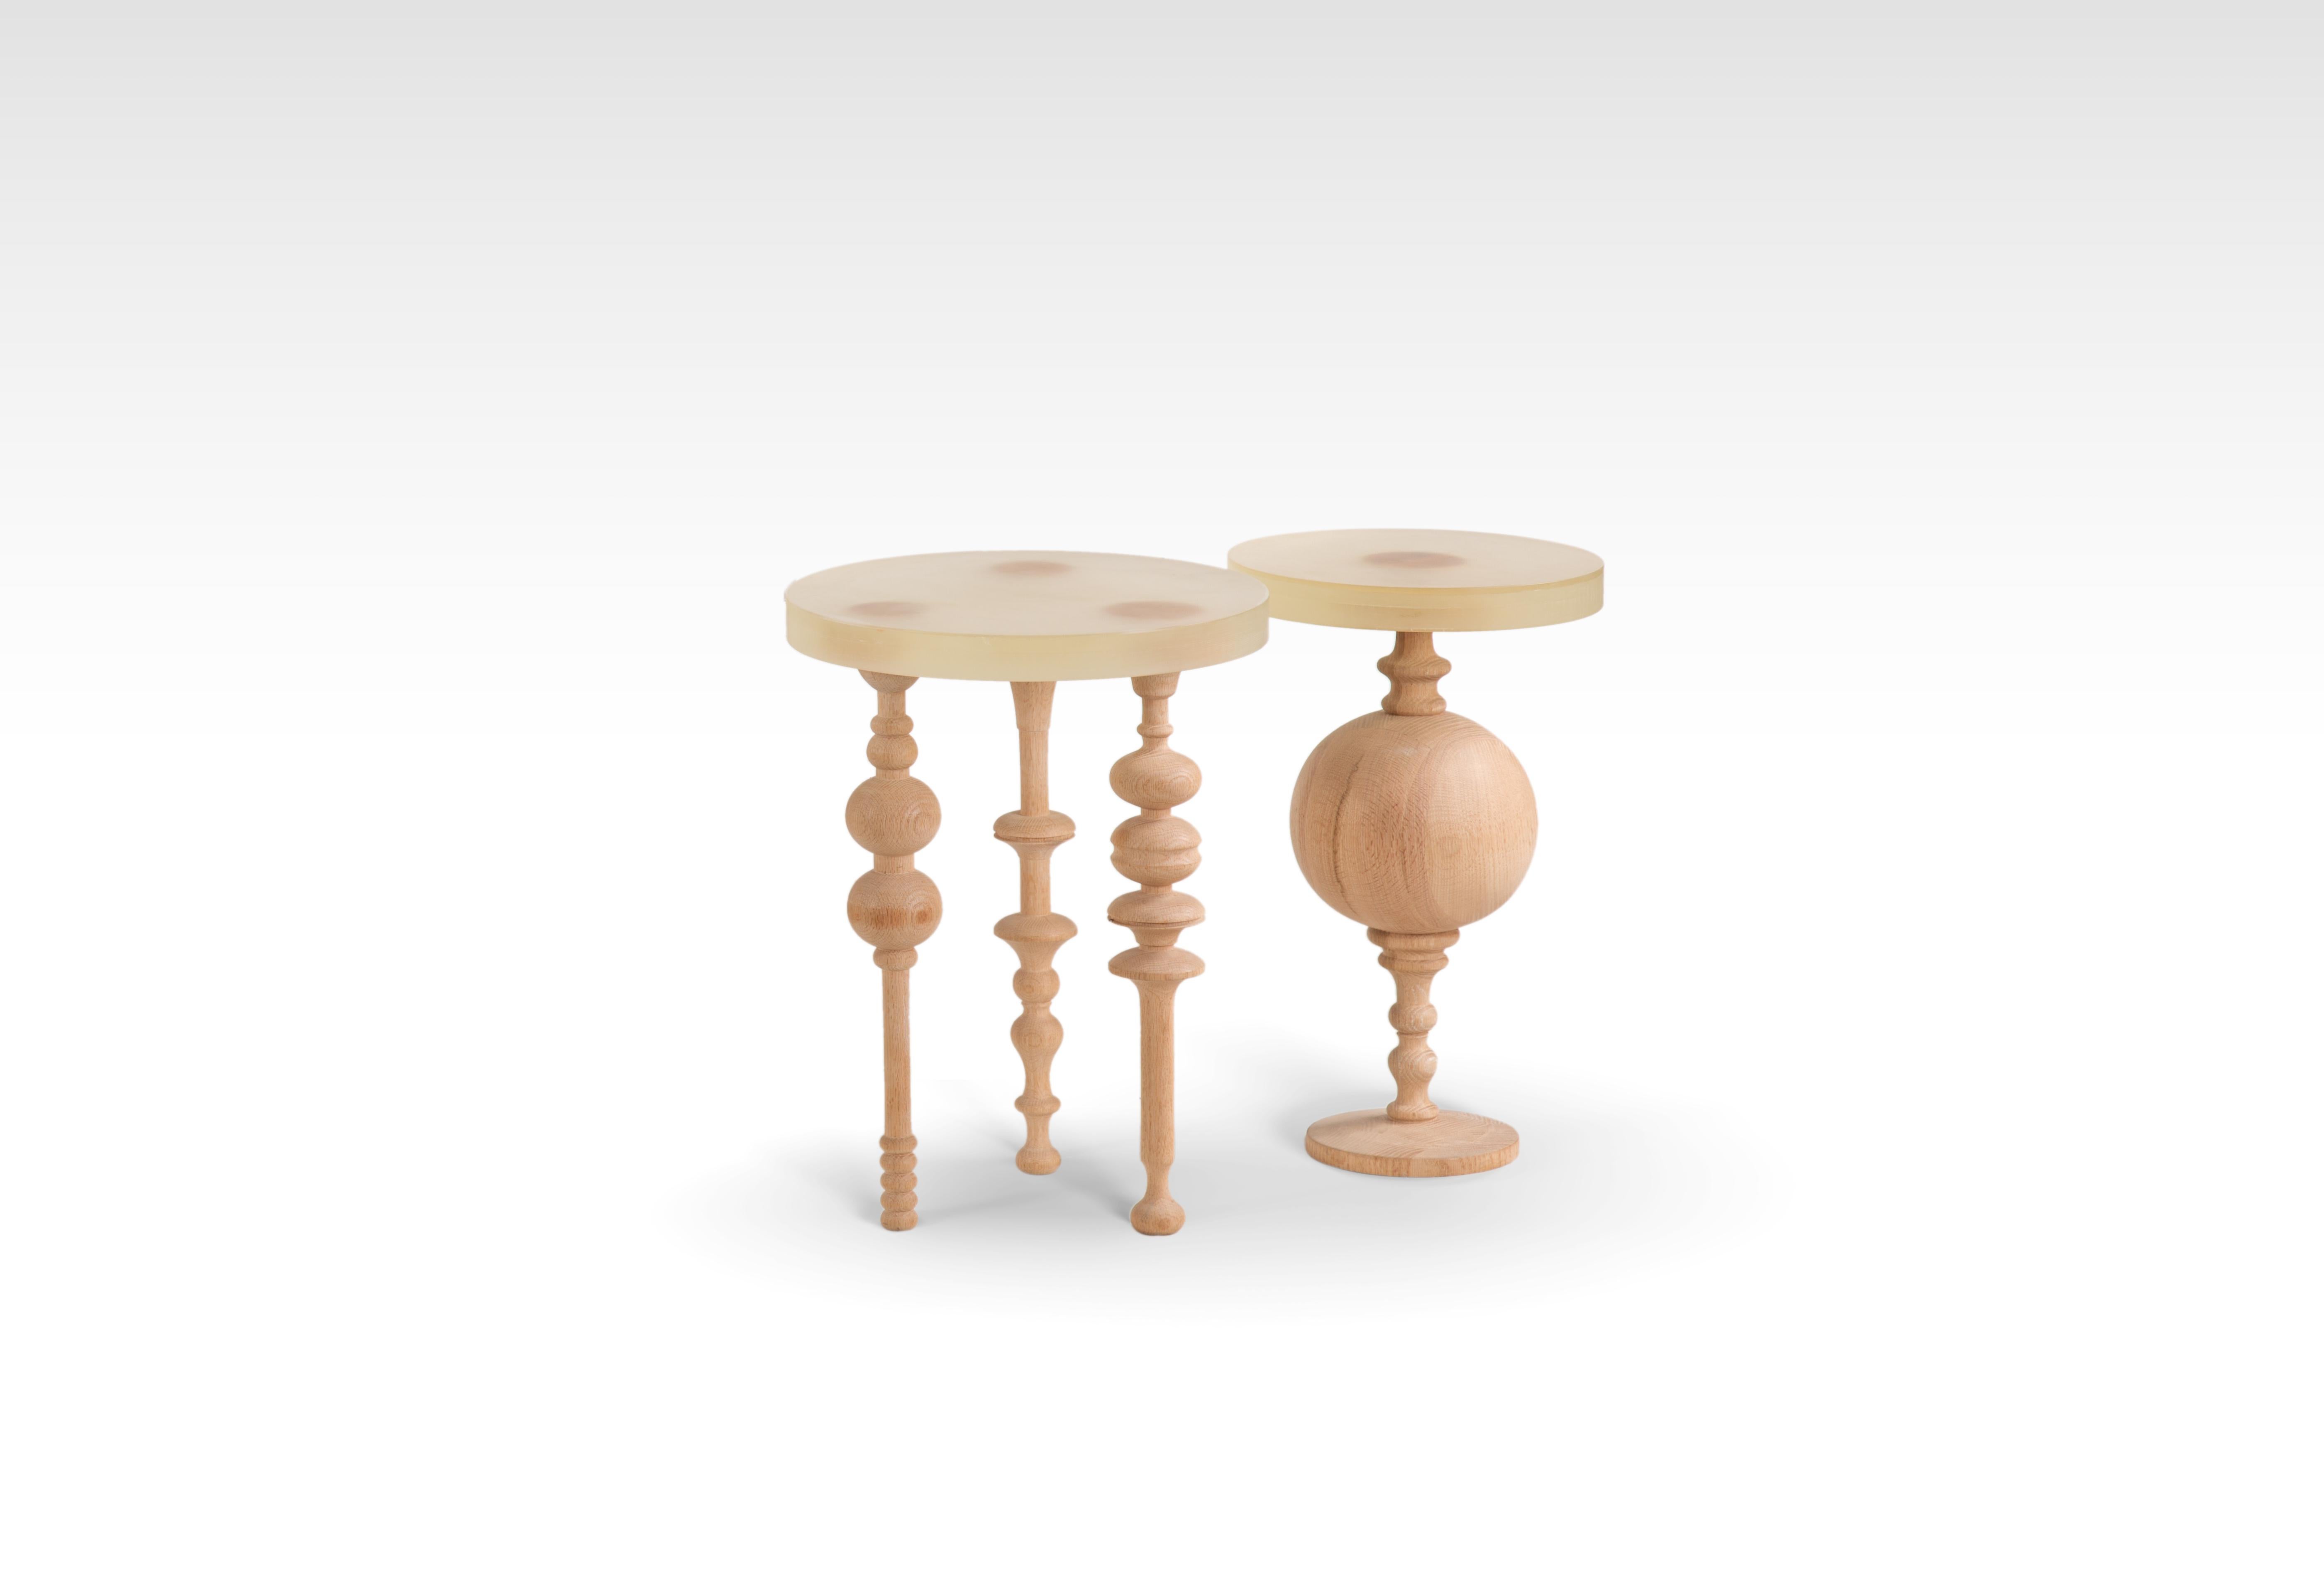 Table d'appoint en bois de chêne d'inspiration arabe avec plateau en résine.
Notre Funky Fusion est une table d'appoint classique avec une touche contemporaine qui apporte du caractère à votre espace de vie. La table est composée de pieds en bois de